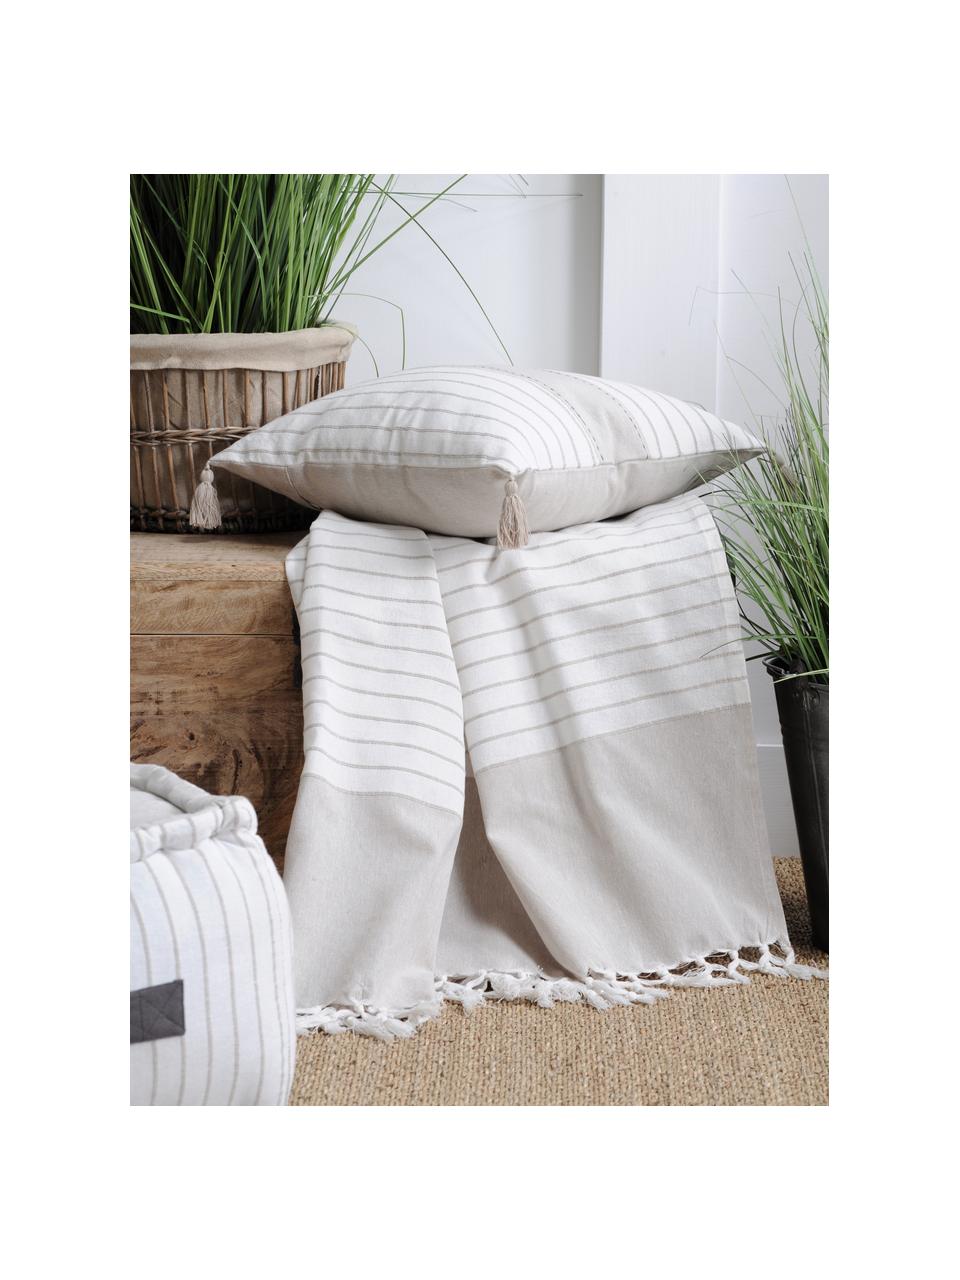 Lekki koc bawełniany z frędzlami Monica, 100% bawełna, Beżowy, biały, S 125 x D 150 cm